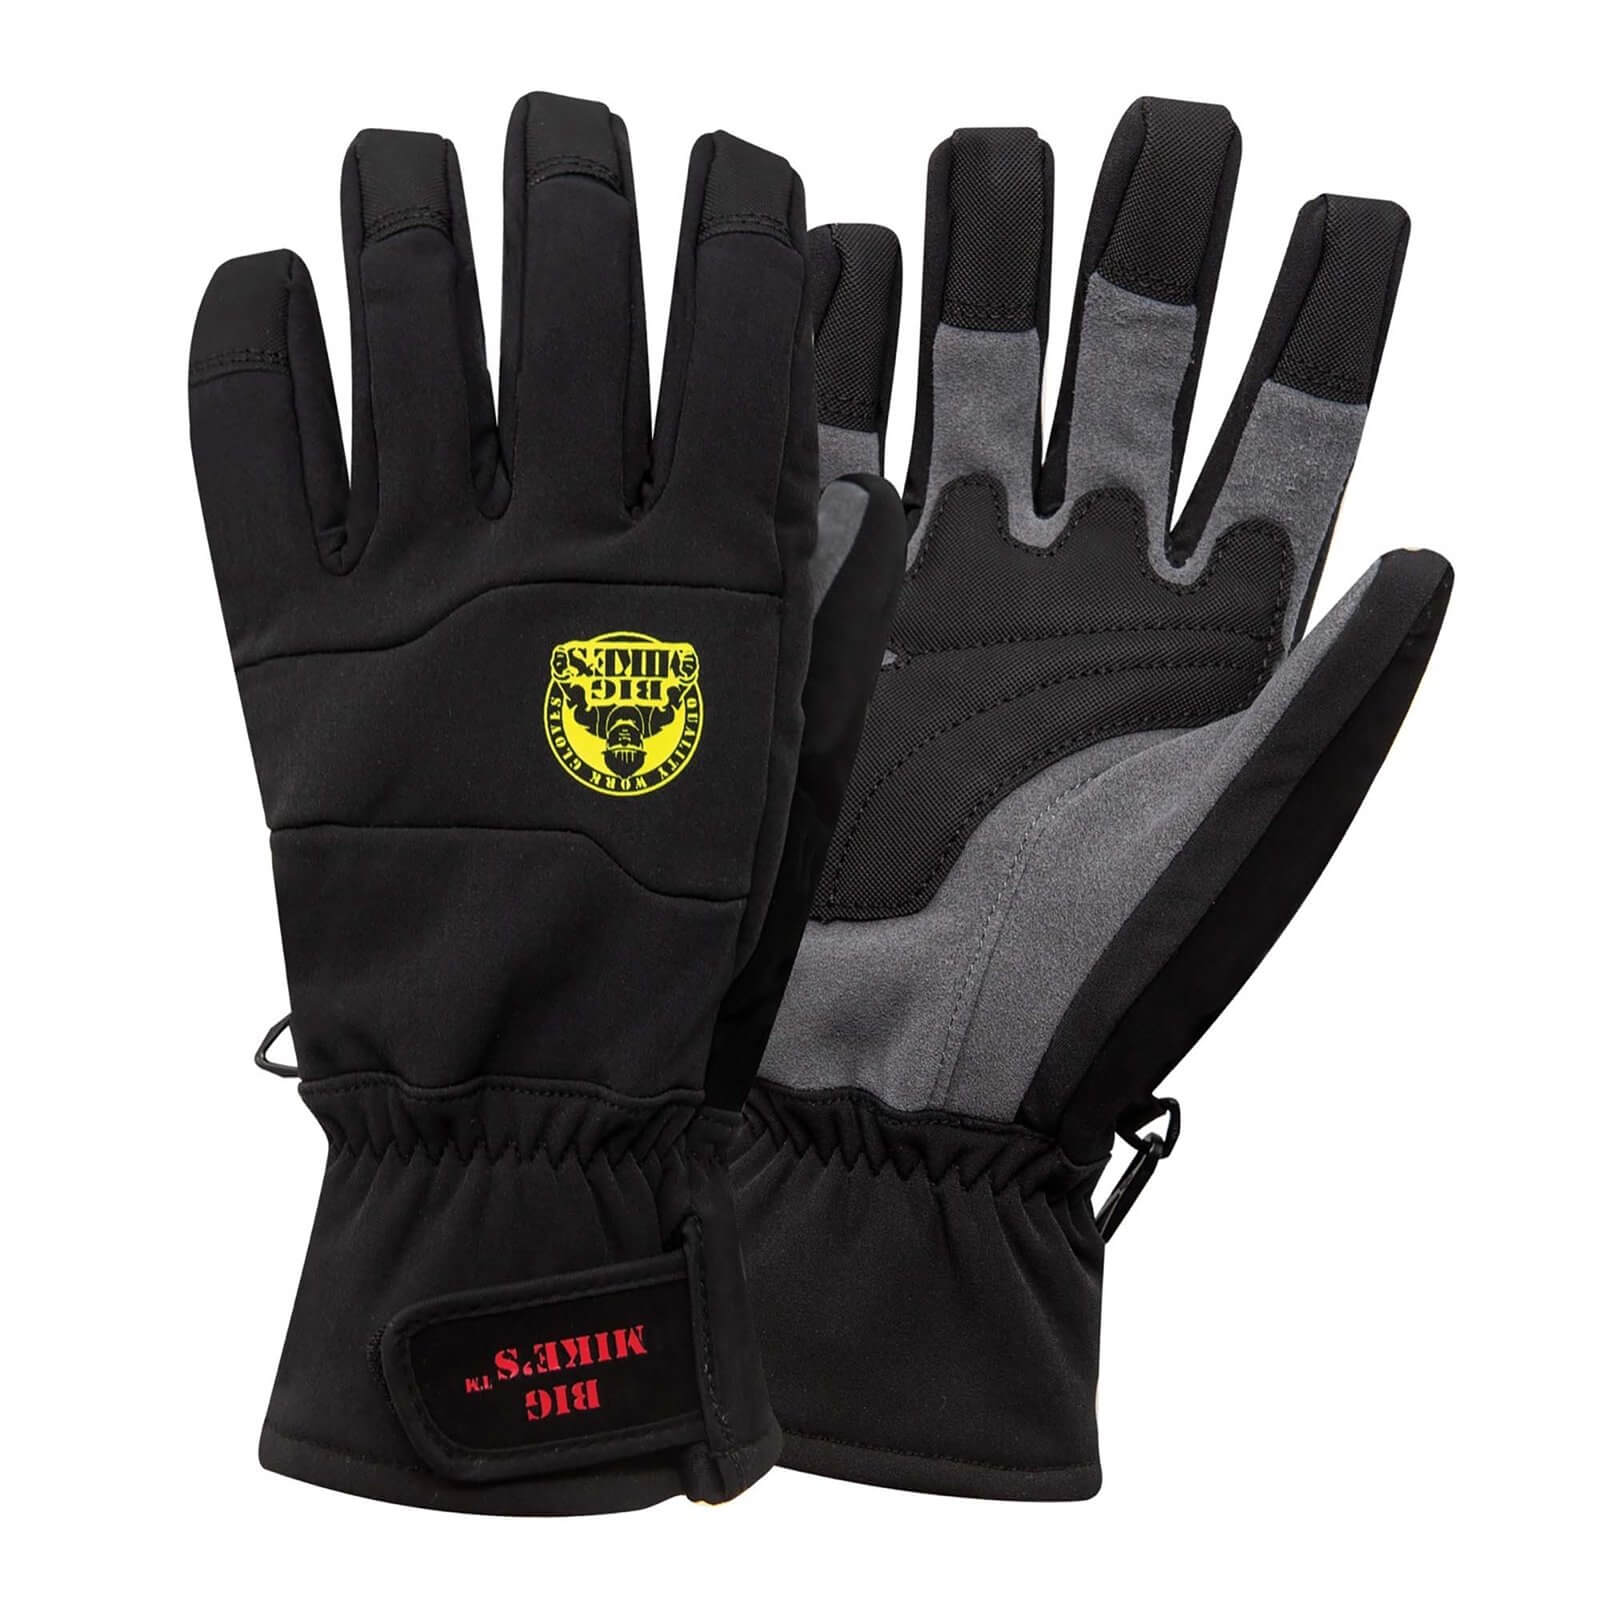 Big Mike's Waterproof Winter Work Gloves - Medium